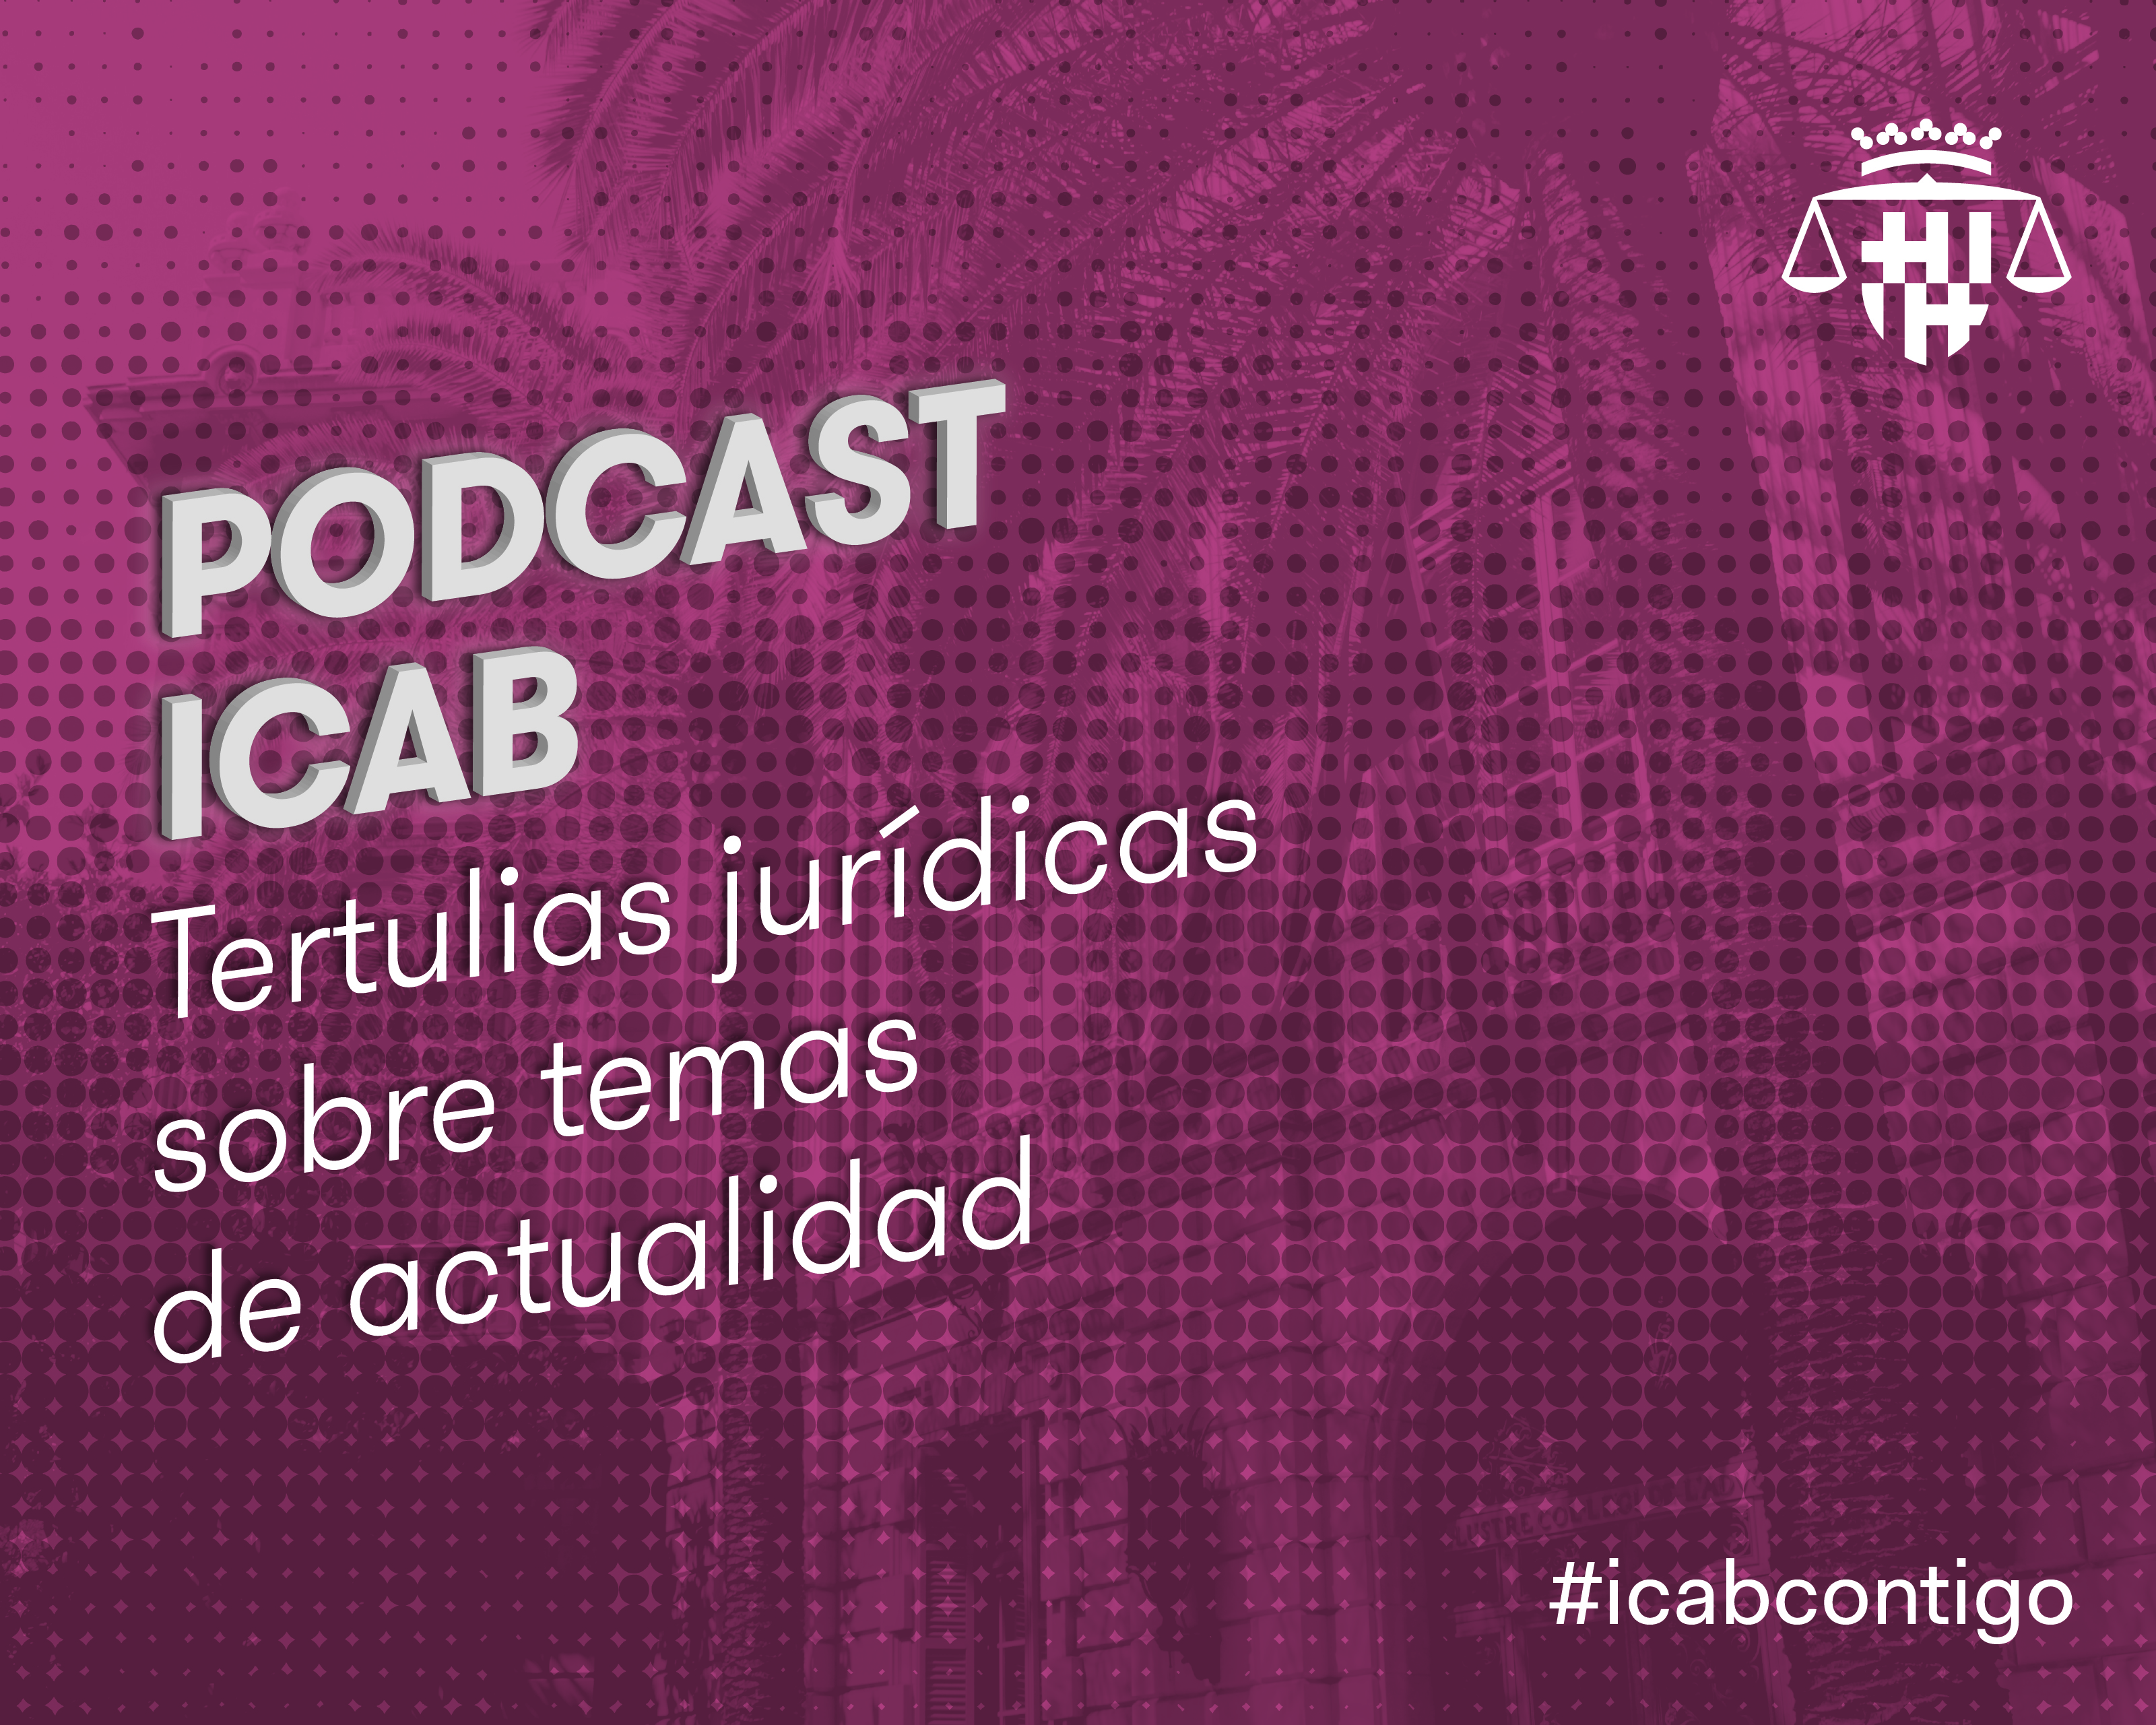 Podcast ICAB - Tertulias jurídicas de actualidad